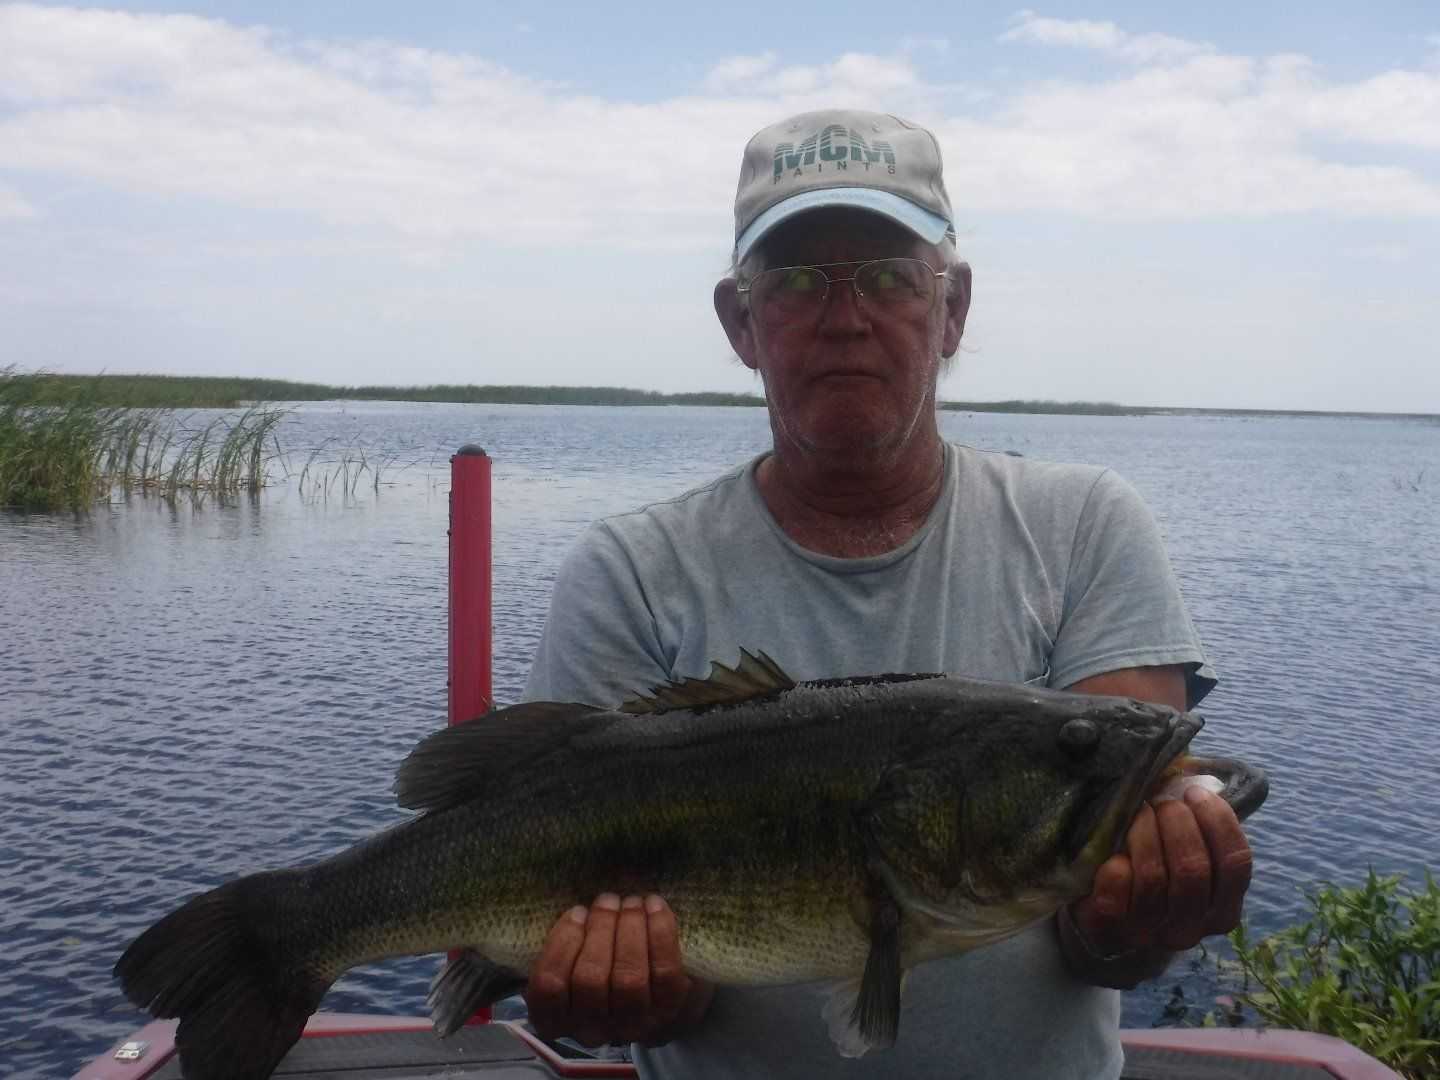 Gary Dotson, 9.5 lbs, Lake Okeechobee